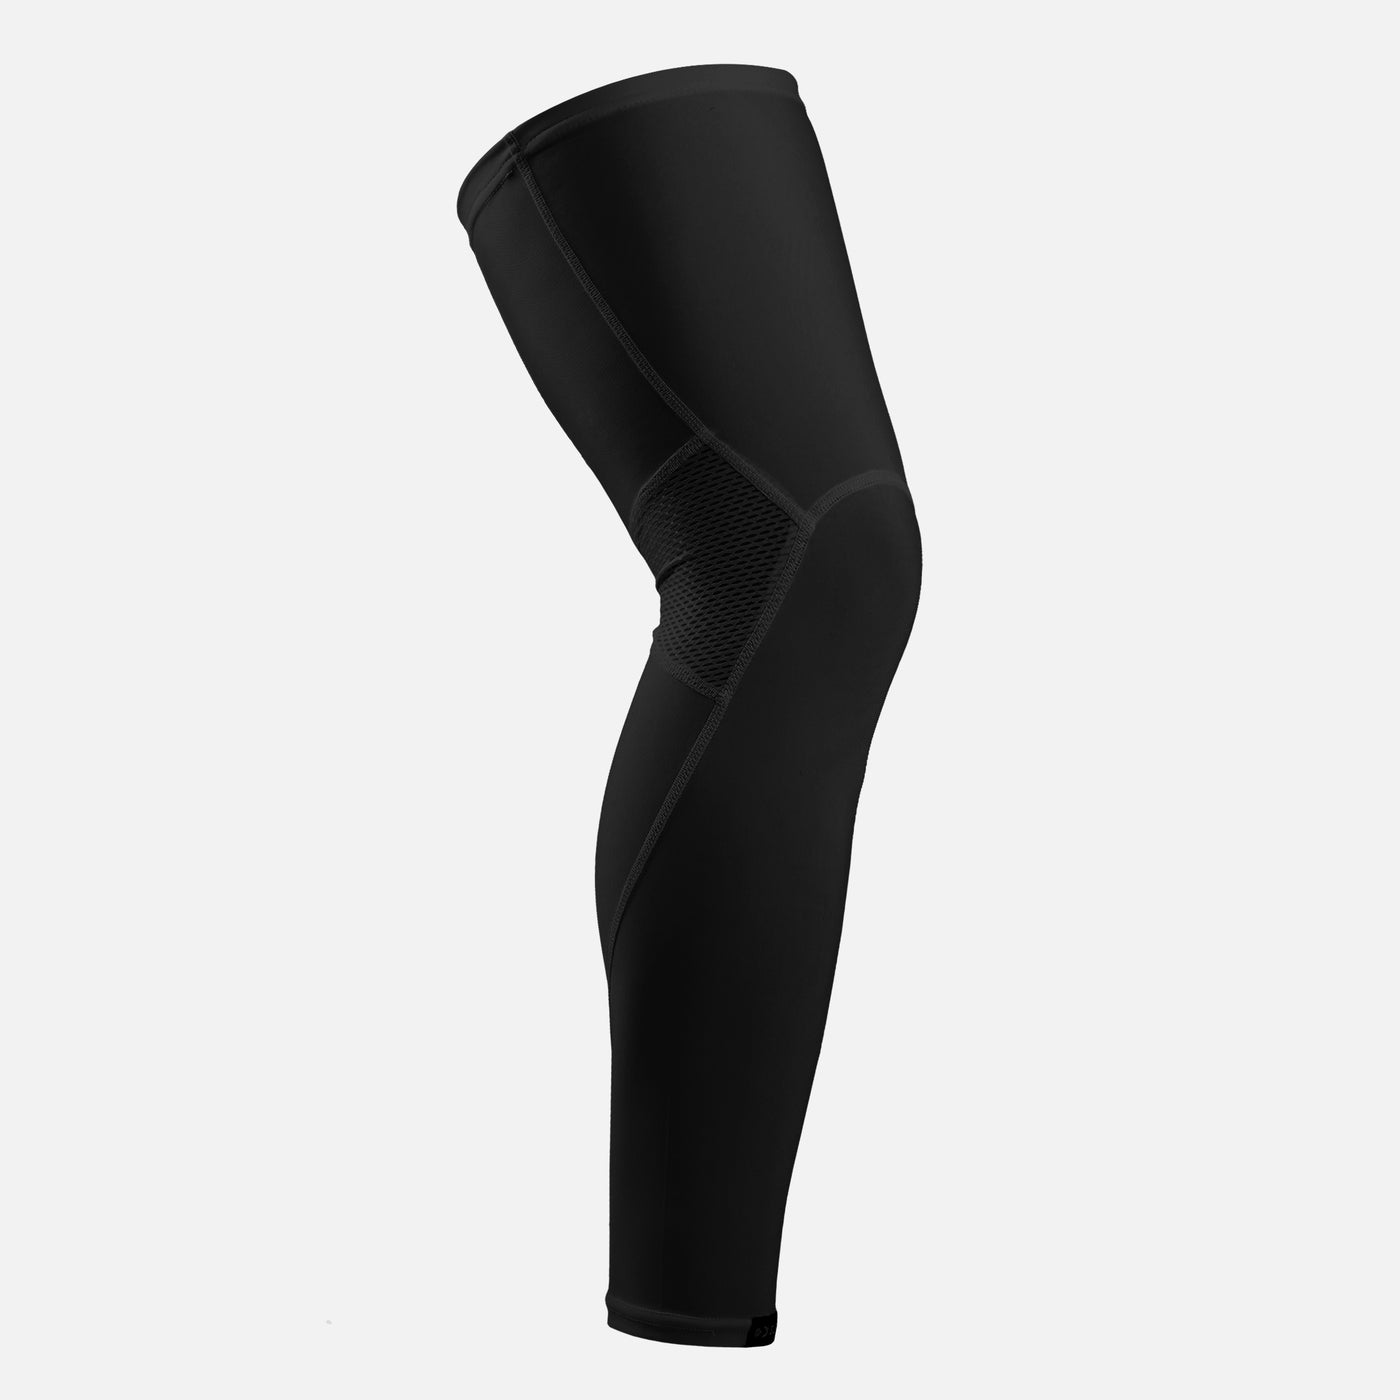 Basic Black Pro Leg Sleeve